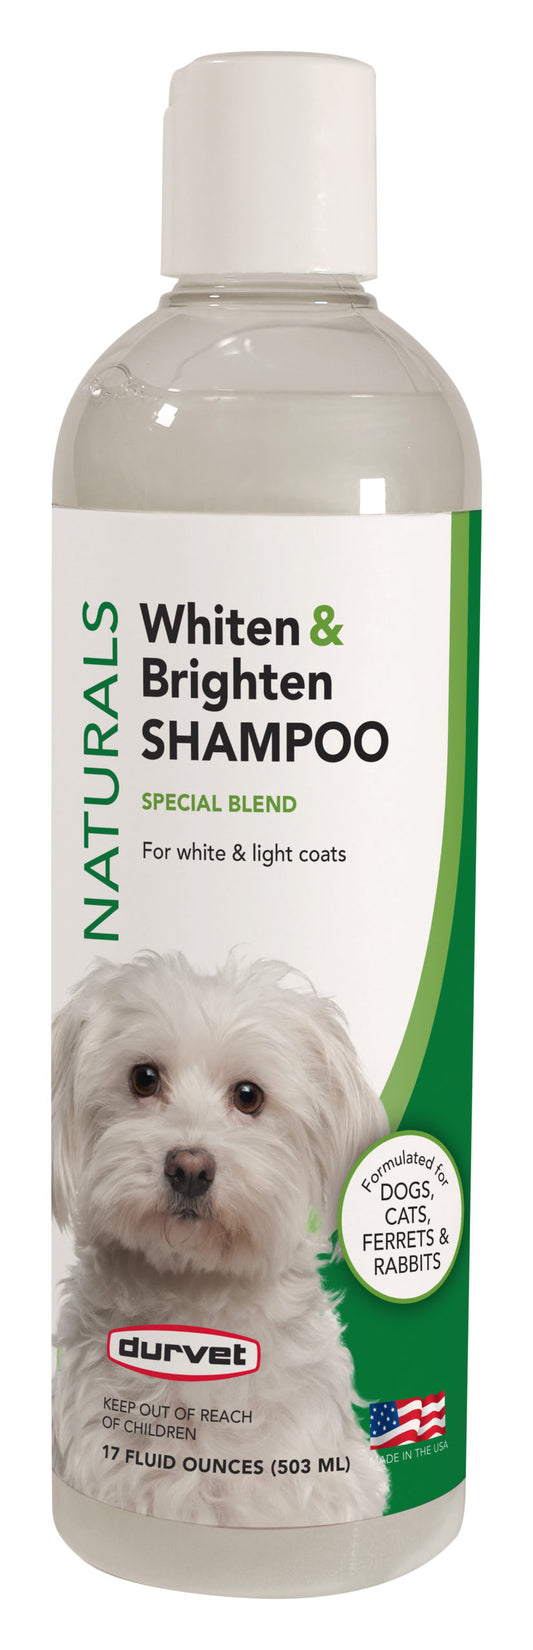 17oz Durvet Naturals Whiten & Brighten Shampoo